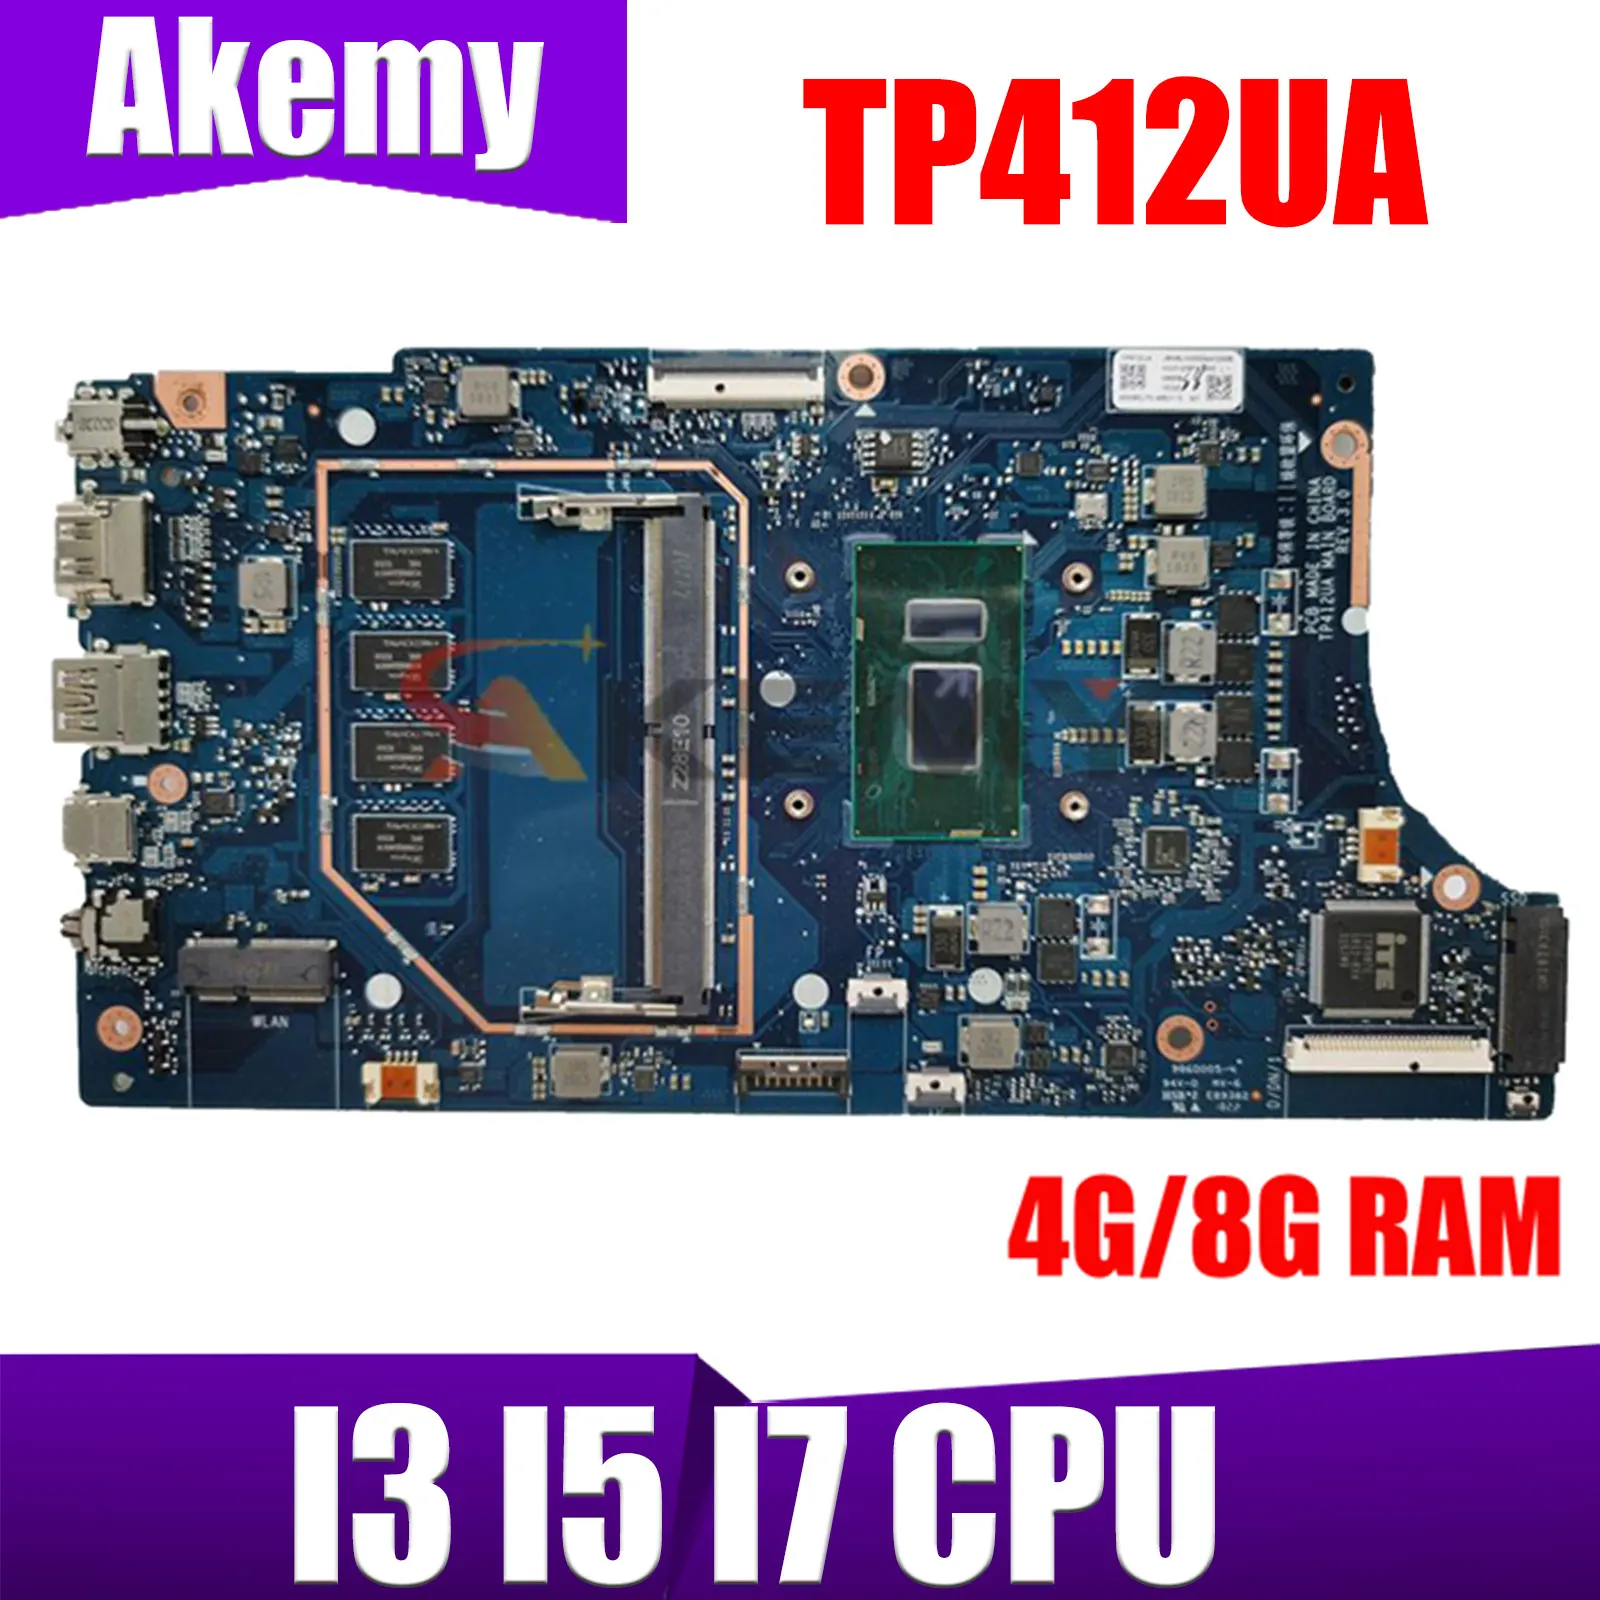 

TP412UA Laptop Motherboard For ASUS Vivobook Flip 14 TP412 TP412U TP412UAF Mainboard With I3 I5 I7 CPU 4GB or 8GB 100% Test OK